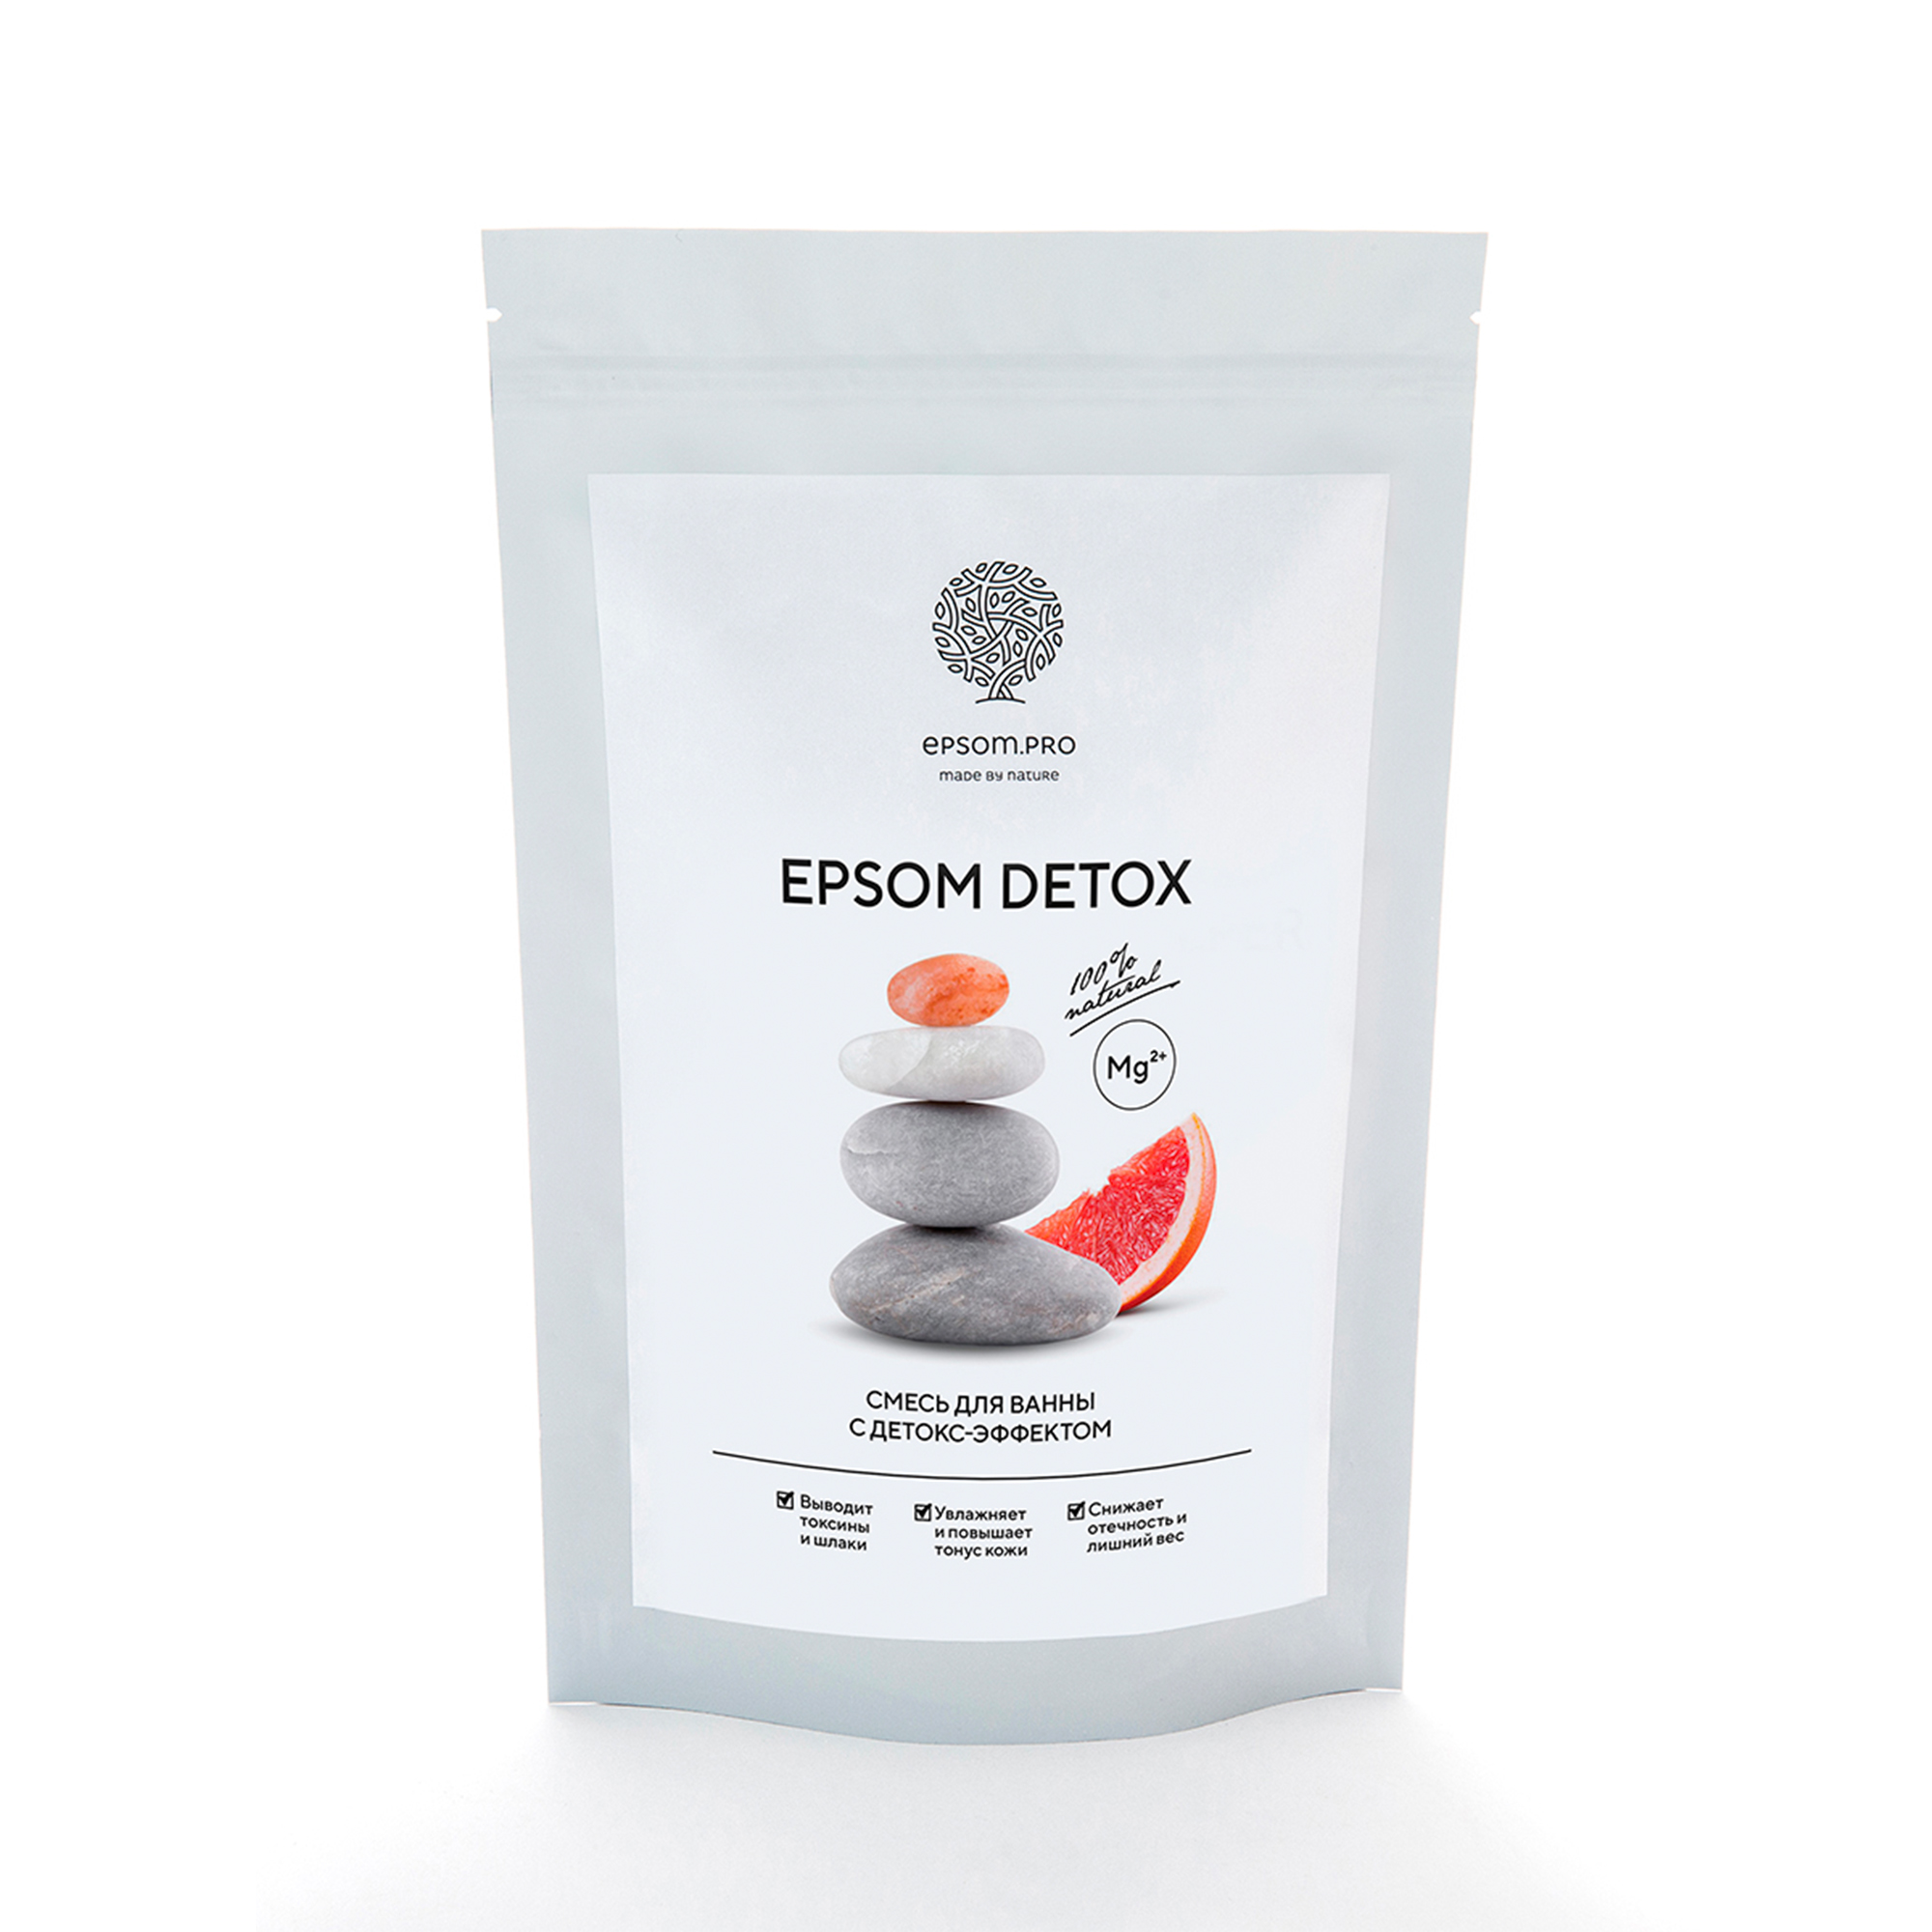 Аромасмесь соли для ванны EPSOM DETOX с детокс-эффектом 1 кг